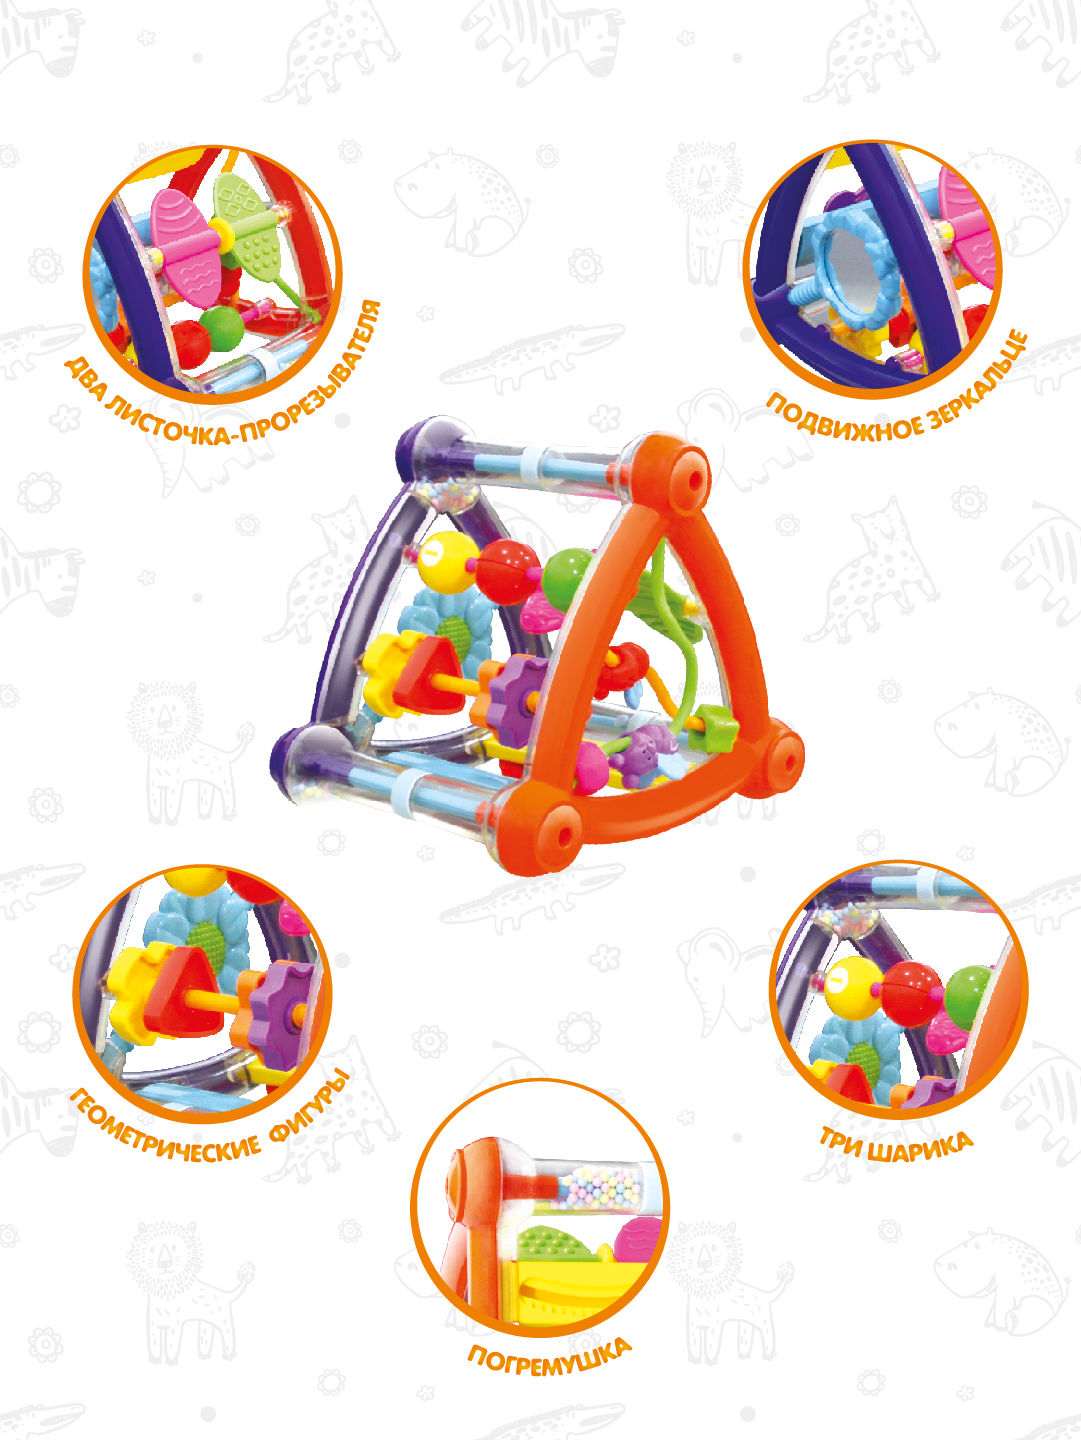 Бизиборд для малышей Levatoys развивающая игрушка Пирамидка 5 игровых зон - фото 4